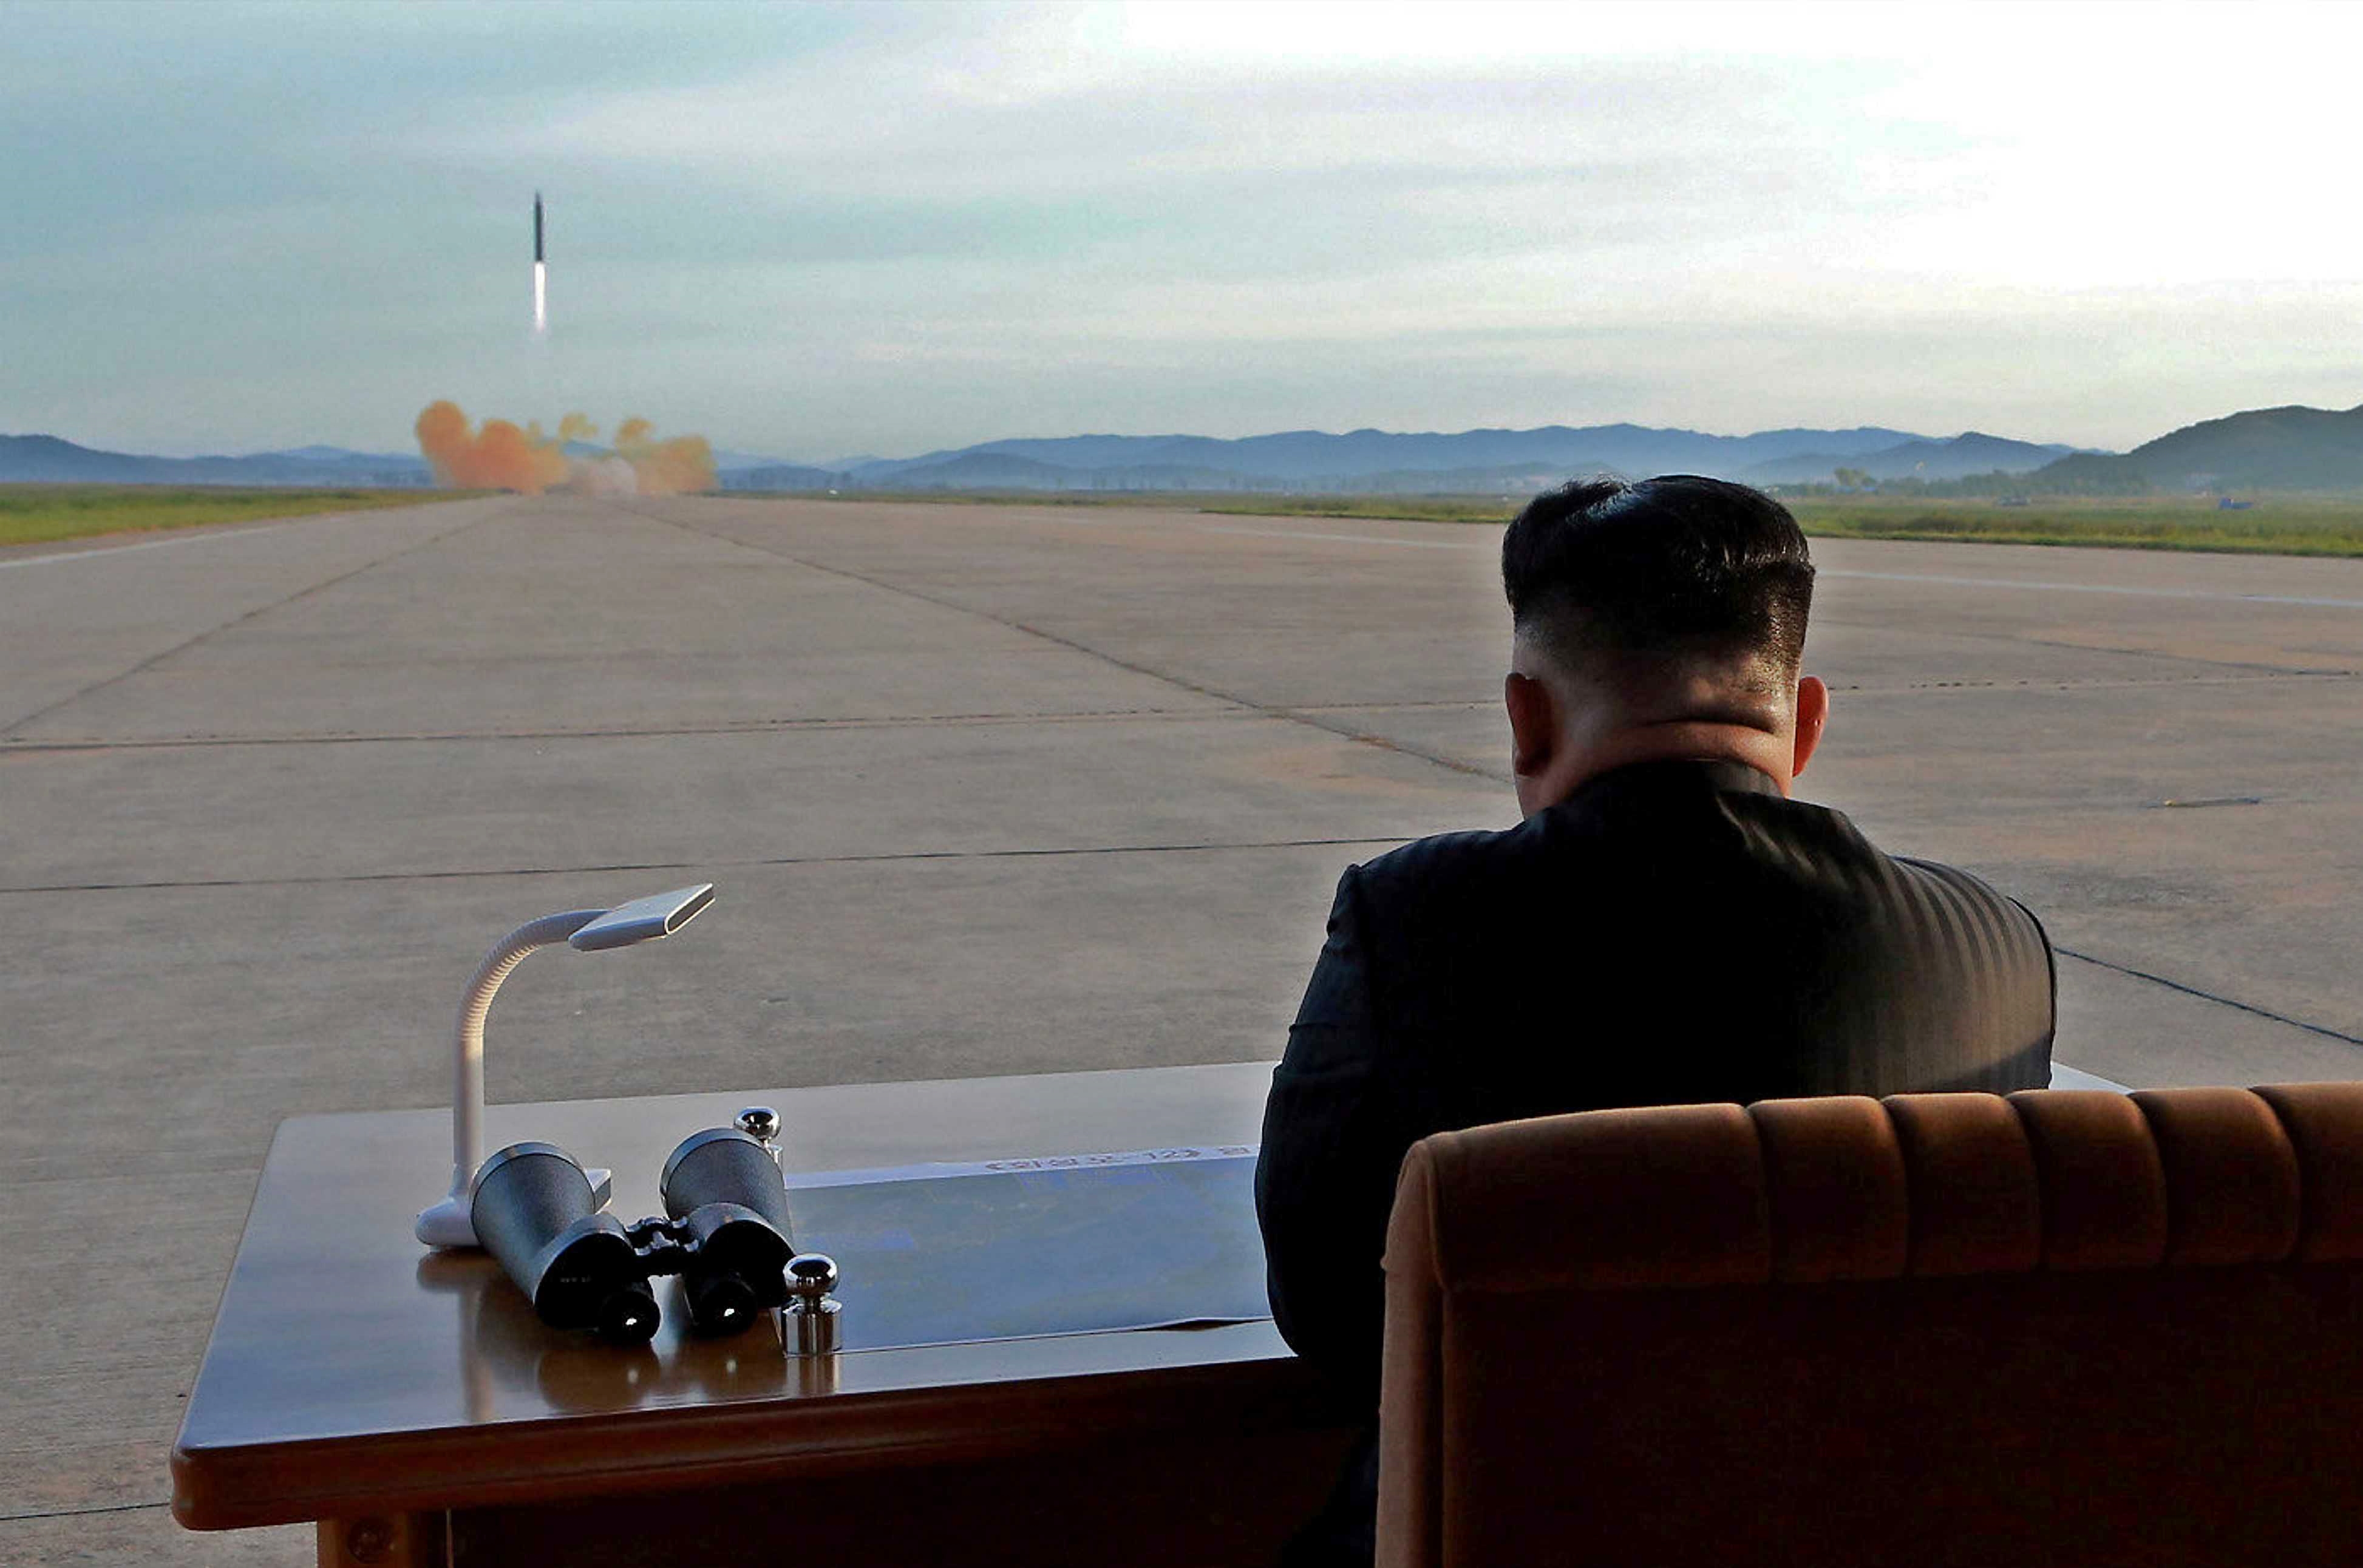 Corea del Nord prepara lancio satelliti spia e comunicazioni